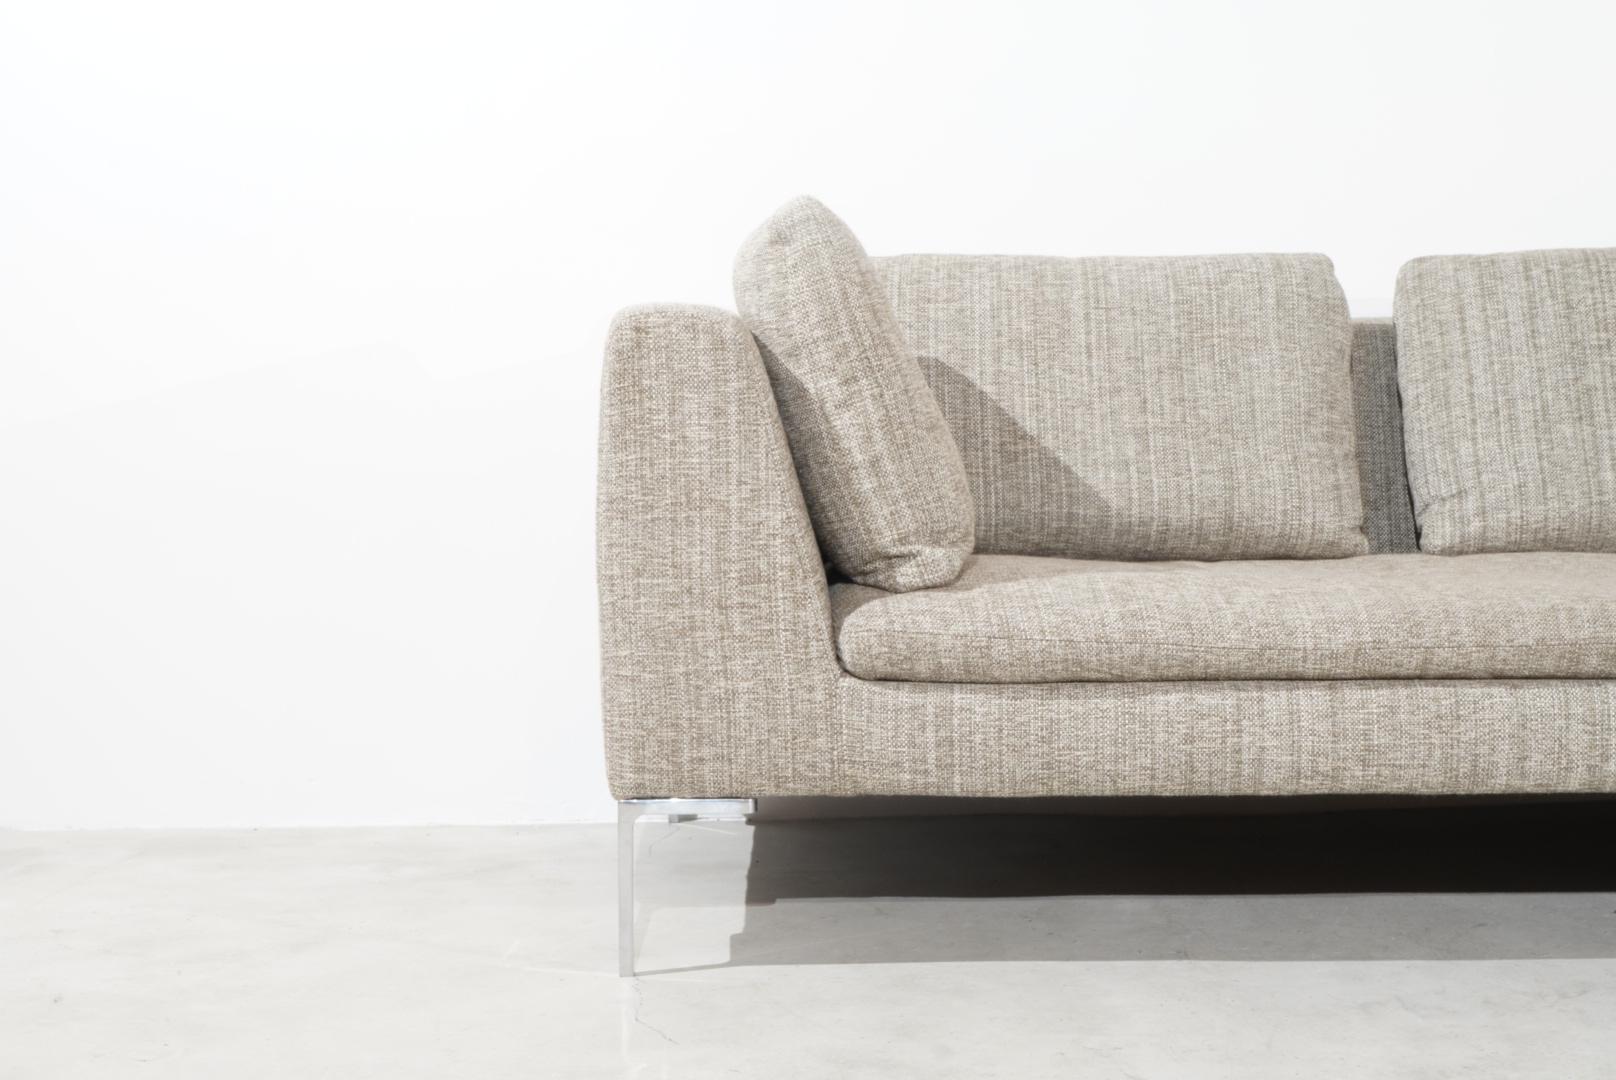 Superbequemes Sofa von dem berühmten Designer Antonio Citterio. Das zweiteilige Sofa wurde von Charles für B&B Italia hergestellt und 1997 entworfen. 
Das Sofa hat L-förmige Aluminiumbeine, ein mit Polyurethanschaum gepolstertes Gestell und einen